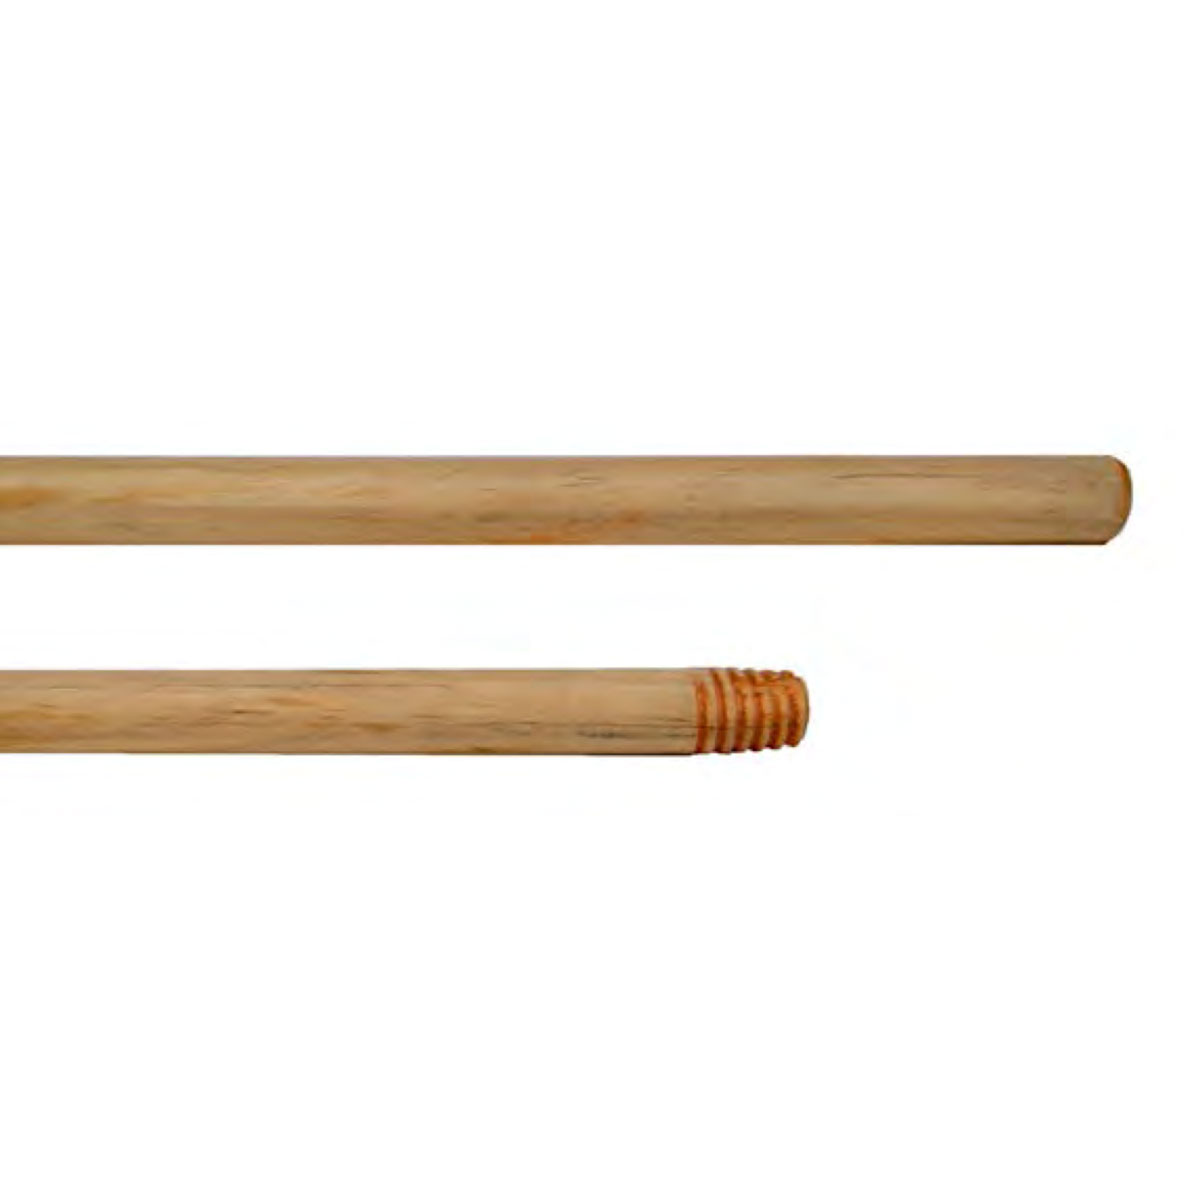 Palo escoba/fregona madera 1,30cm - DETYCEL Productos de limpieza